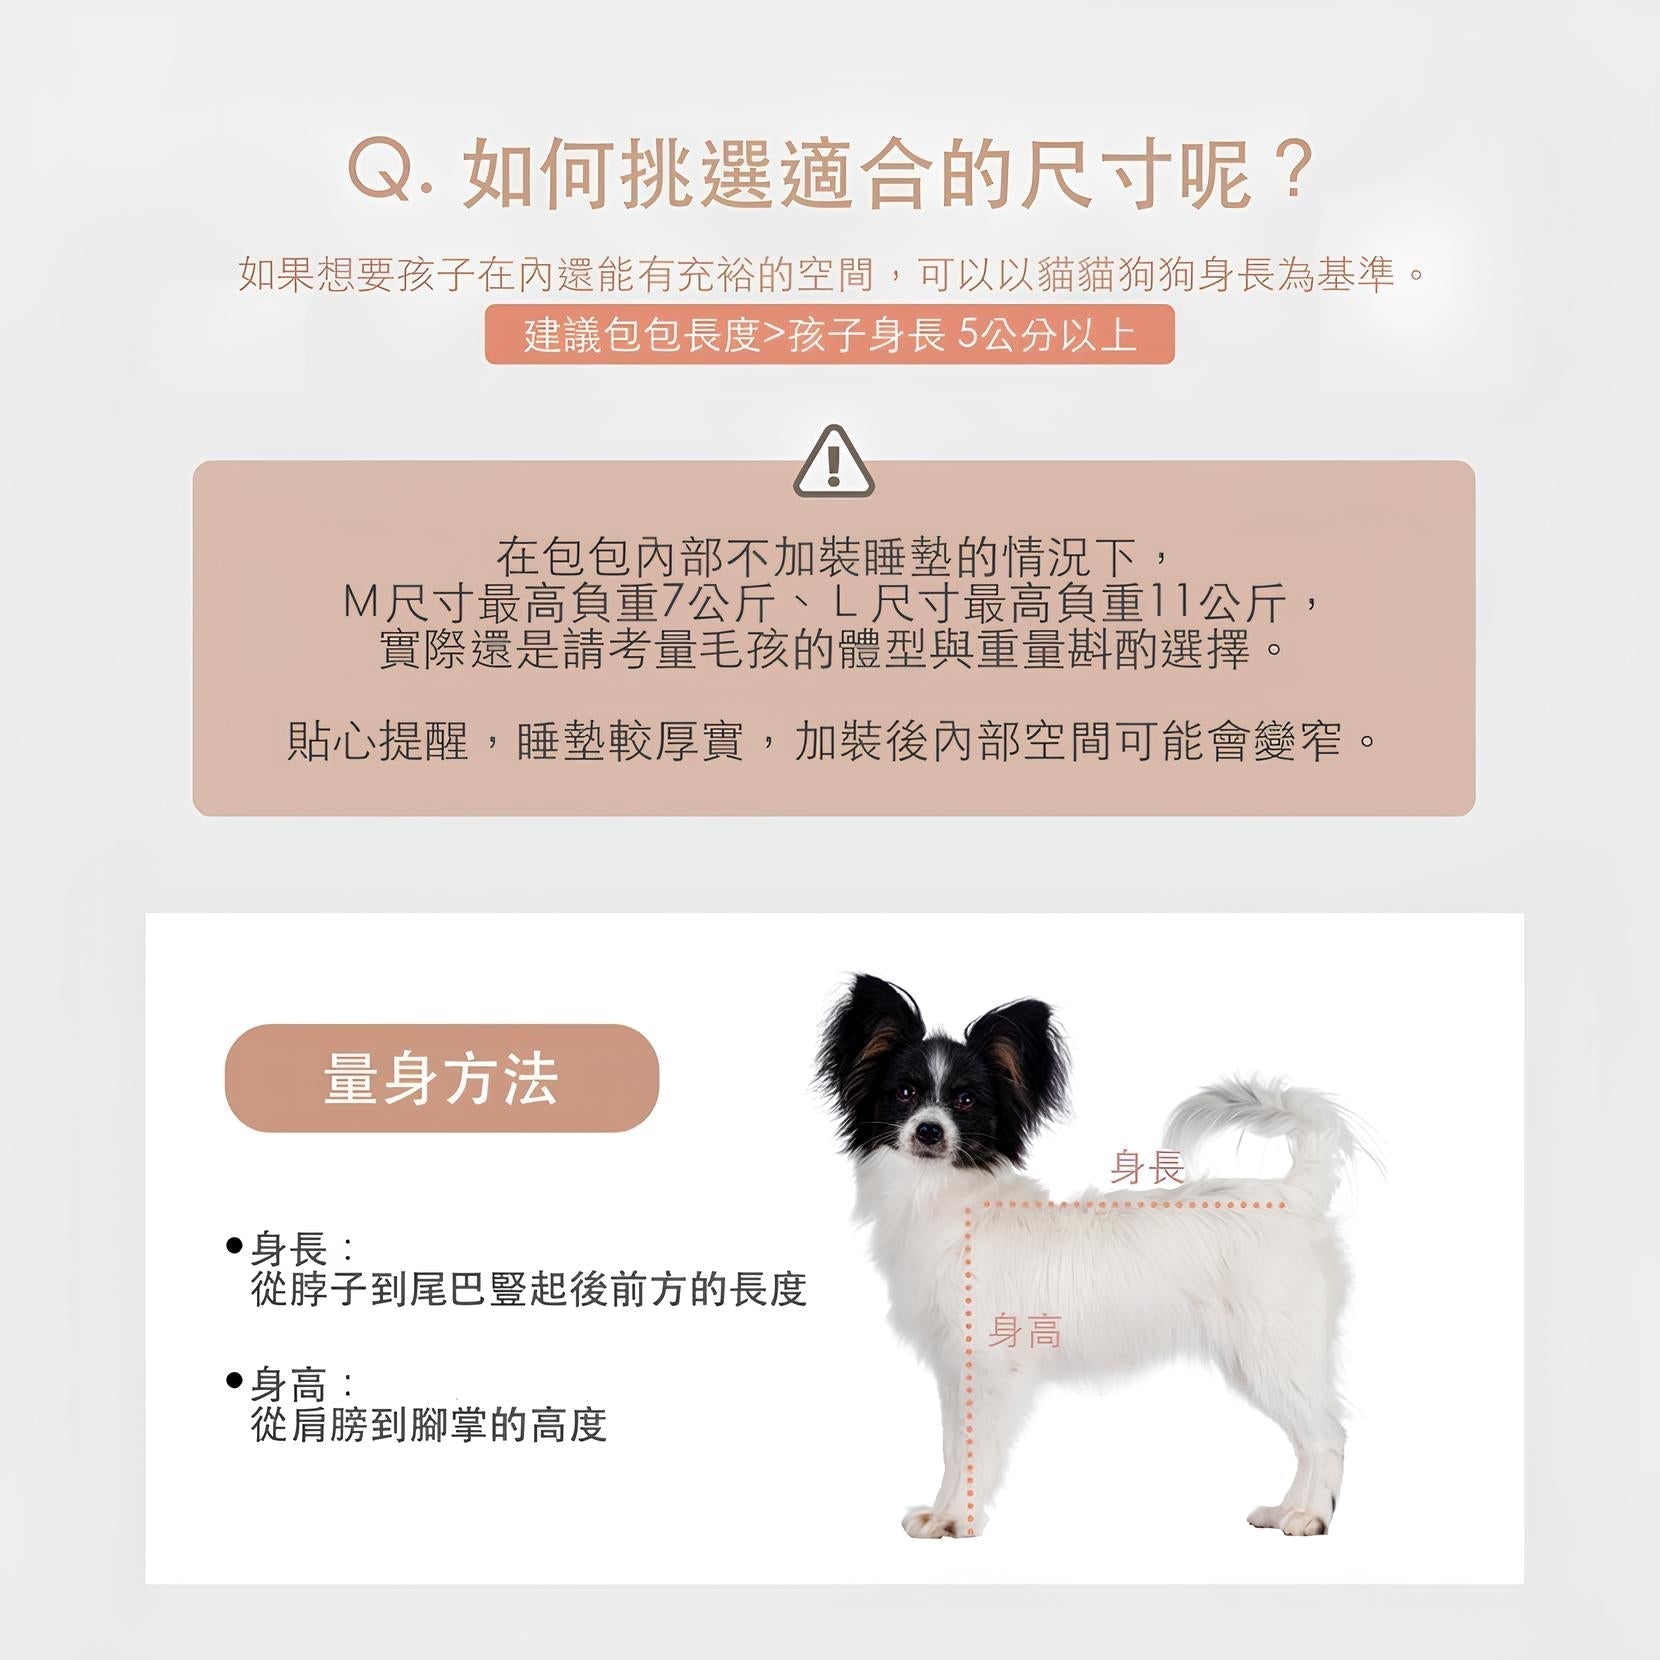 韓國 Adoptme 6合1多功能寵物外出背包｜馬卡龍粉藍 - 高品質寵物背包 - 特價 $TWD 3840｜LOVE PET FAMILY